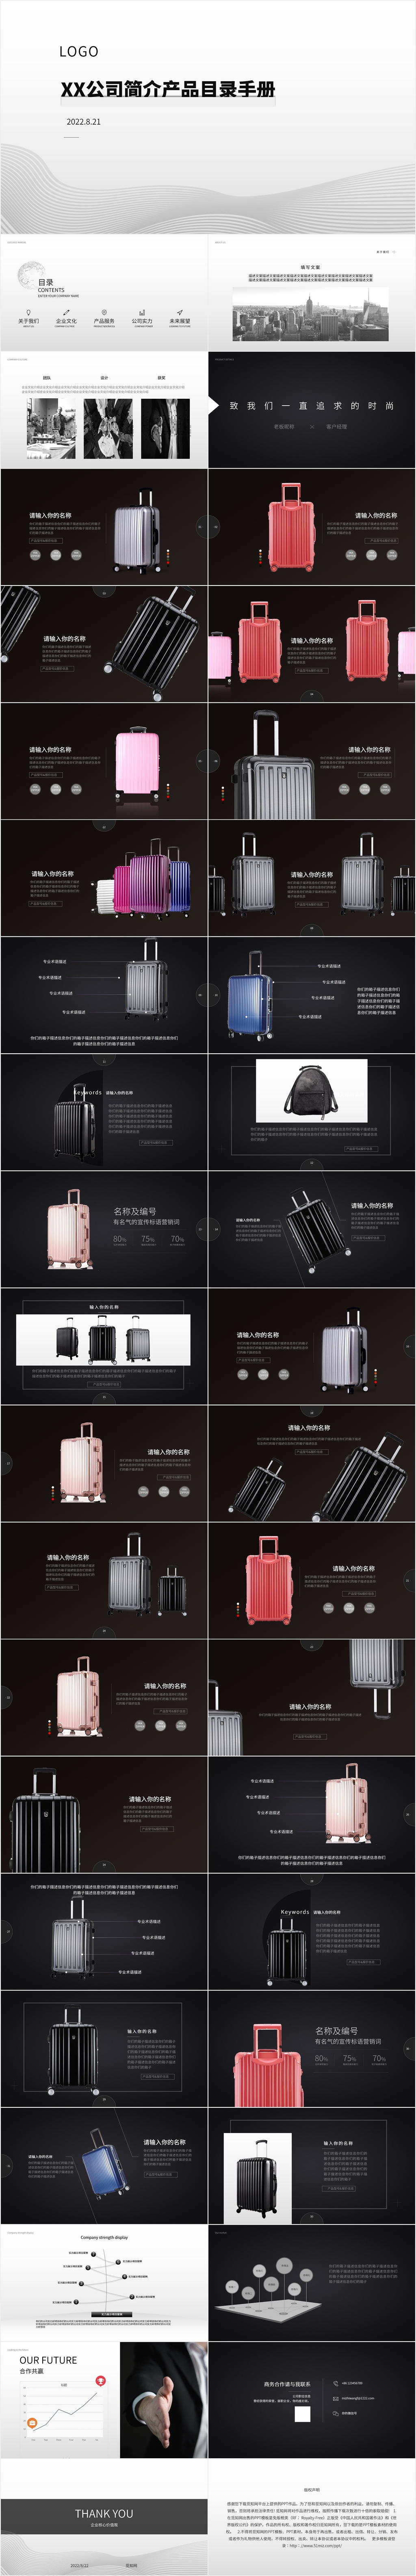 黑白大气简洁行李箱产品介绍宣传PPT模板产品手册